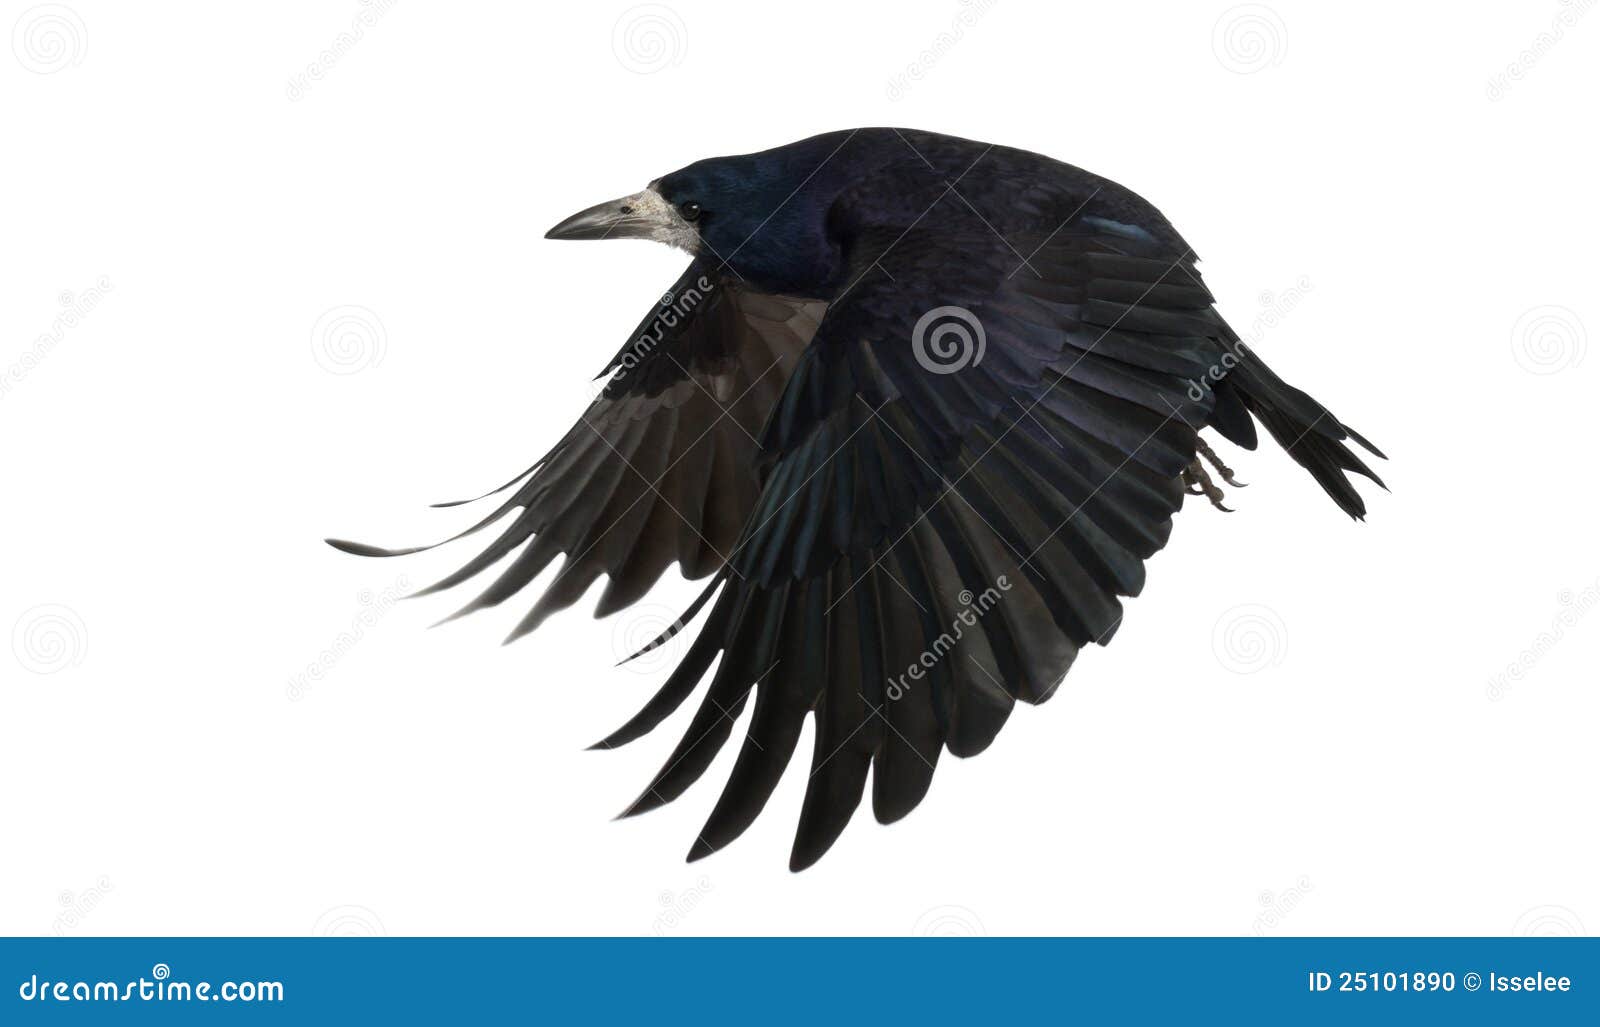 rook, corvus frugilegus, 3 years old, flying